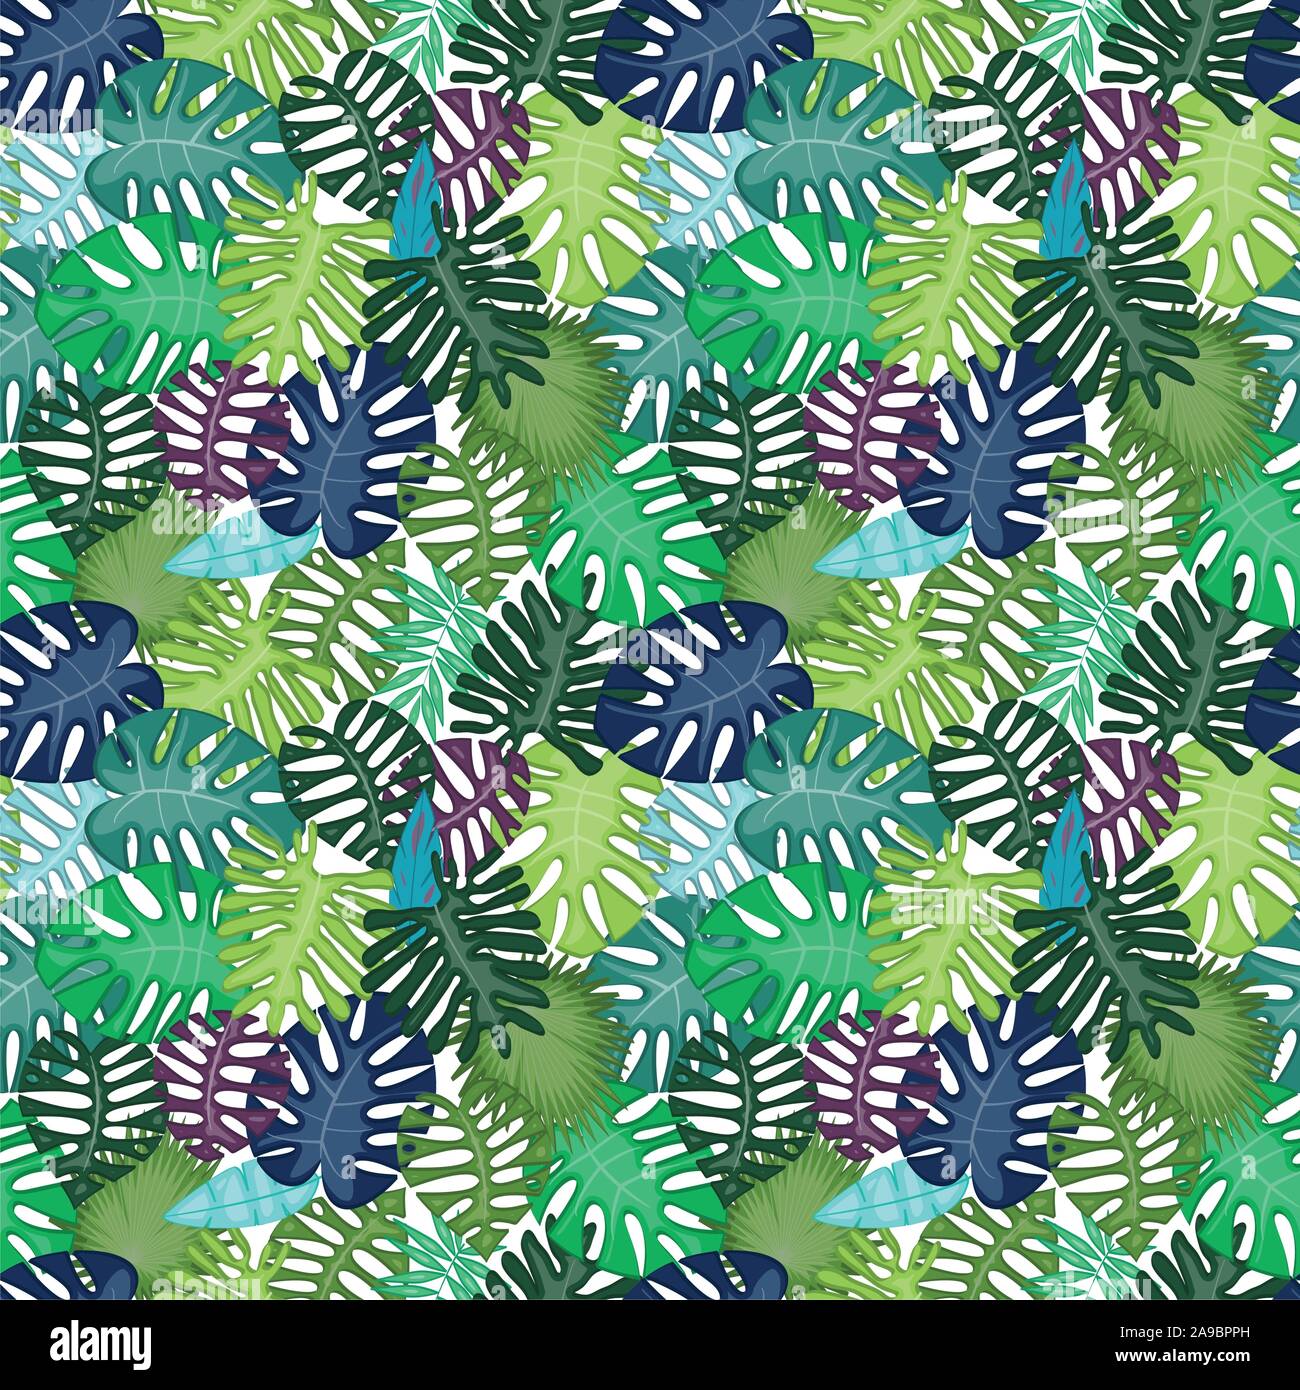 Feuille tropicale sans motif ou Background Vector Illustration de Vecteur